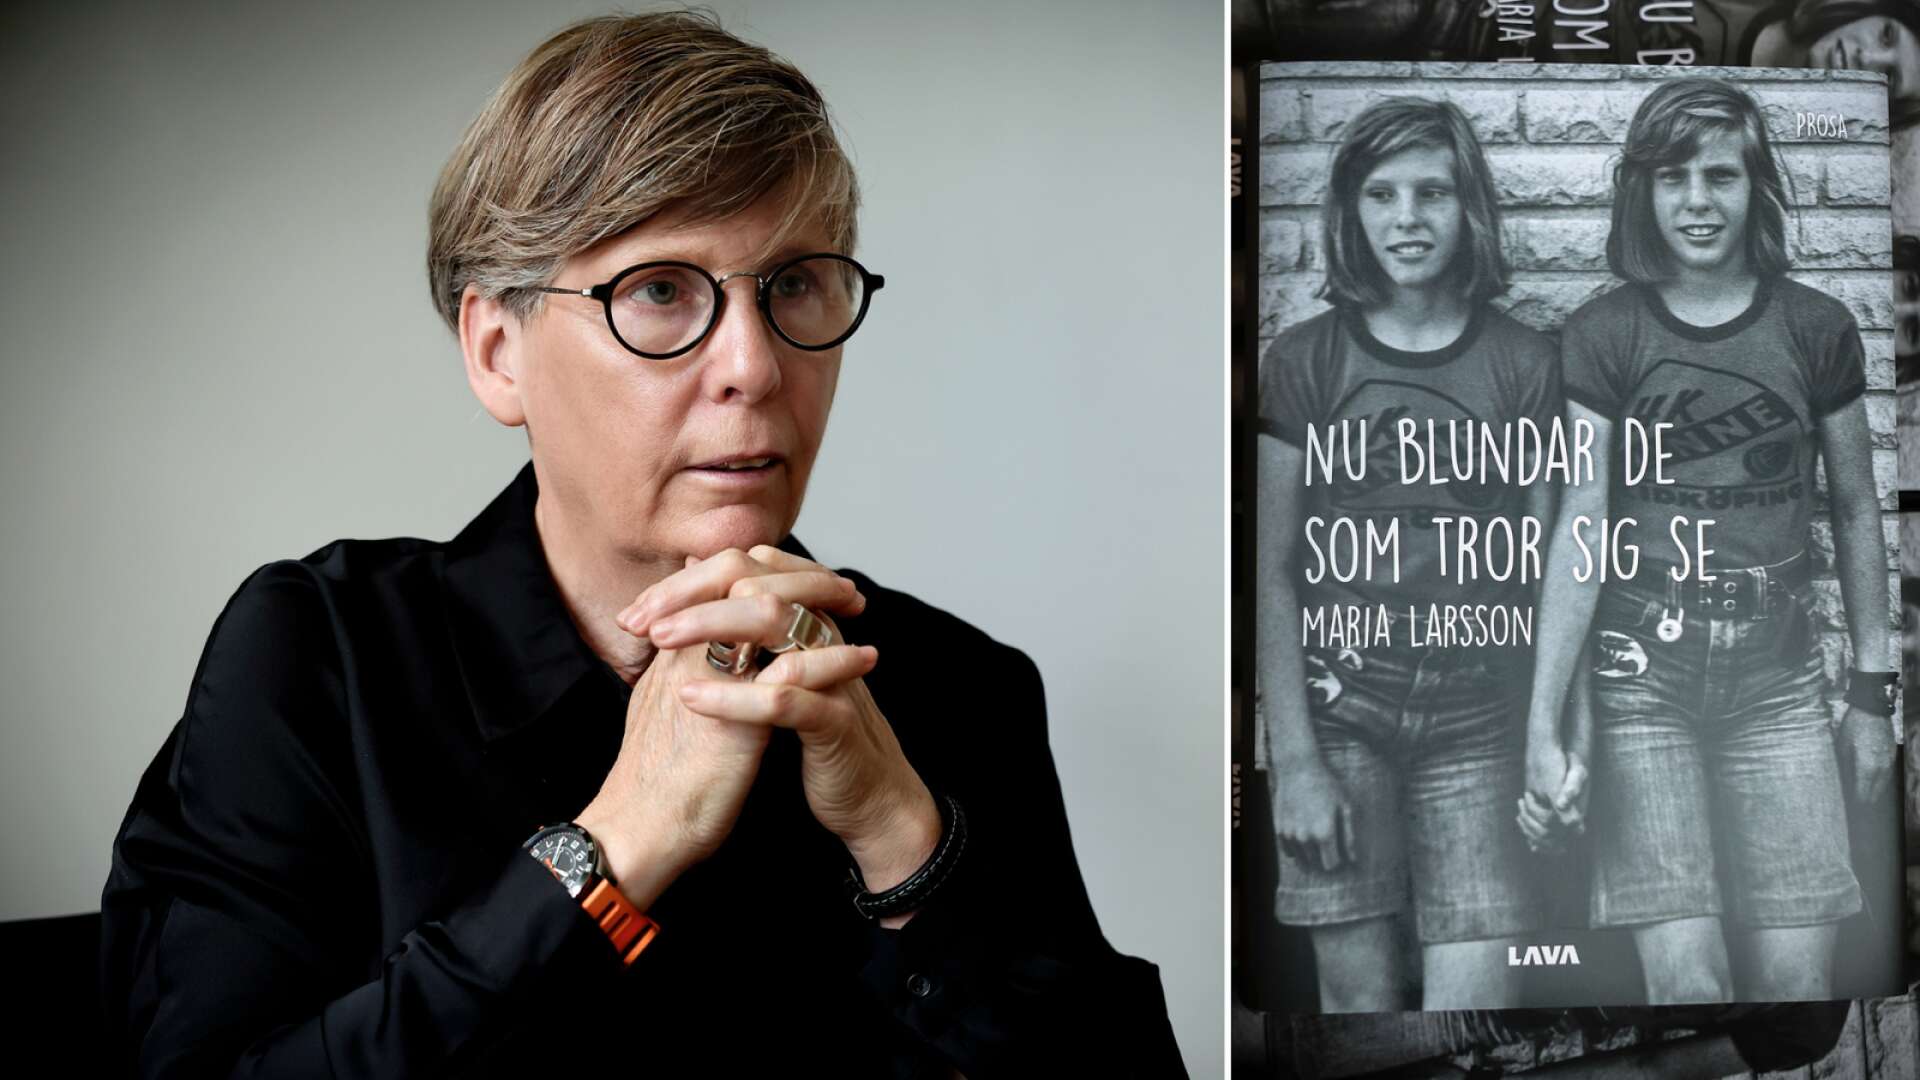 Har skrivit en bok om uppväxten som homosexuell i Lidköping • ”Insett att det var rena övergrepp”